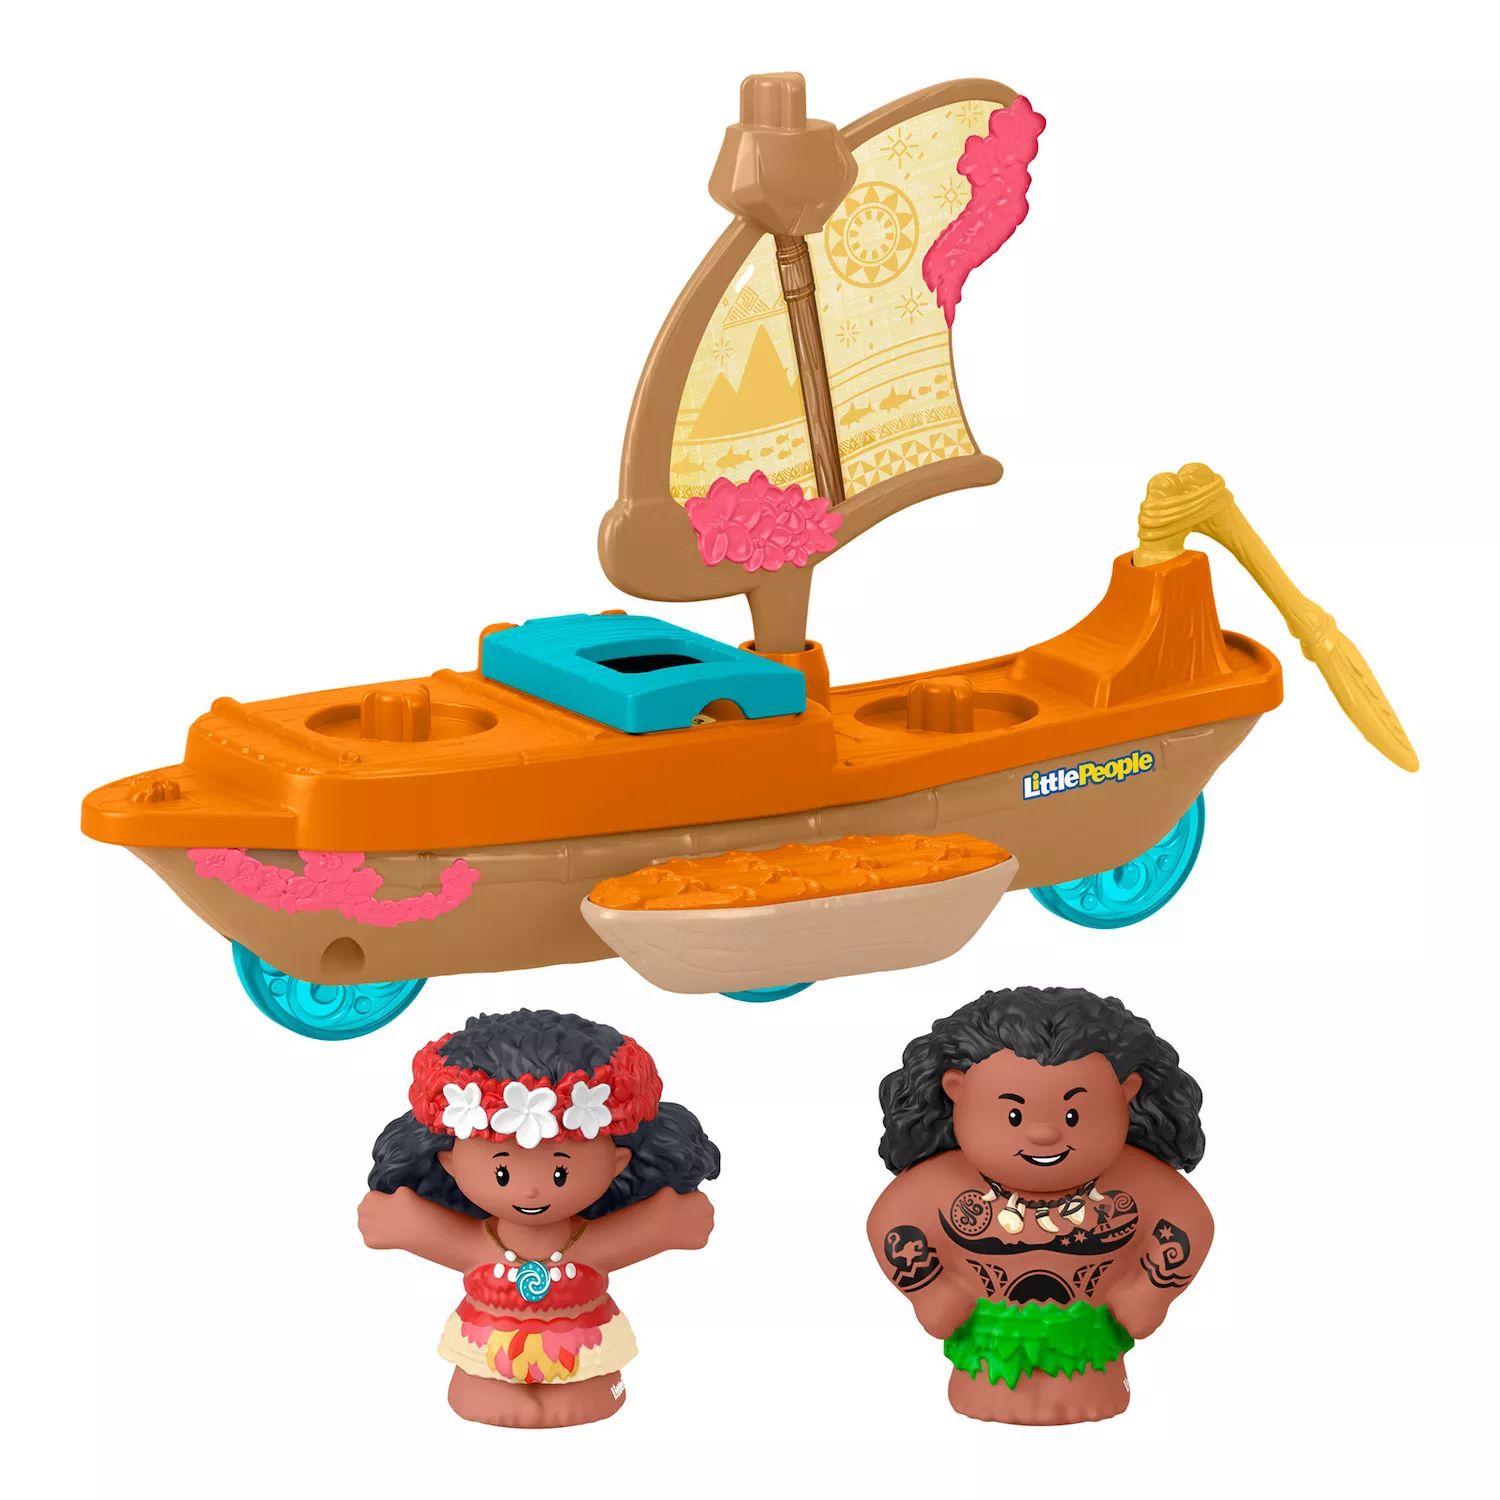 Набор каноэ и фигурок Disney's Moana & Maui Little People от Fisher-Price Little People набор фигурок fisher price little people collector the office figure set